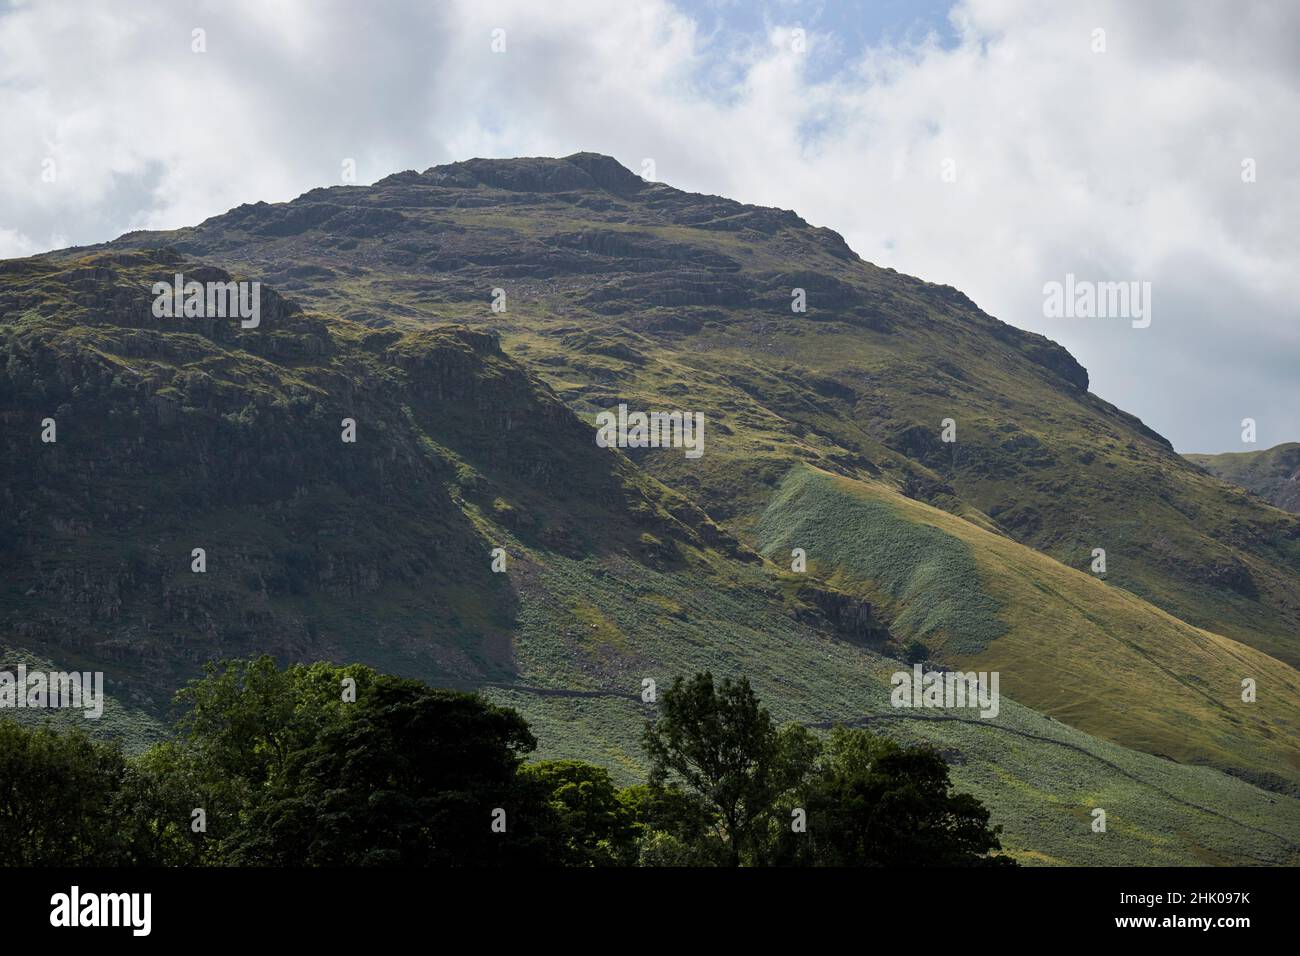 hecht von Blisco aus dem langdale Valley, Seengebiet, cumbria, england, großbritannien Stockfoto